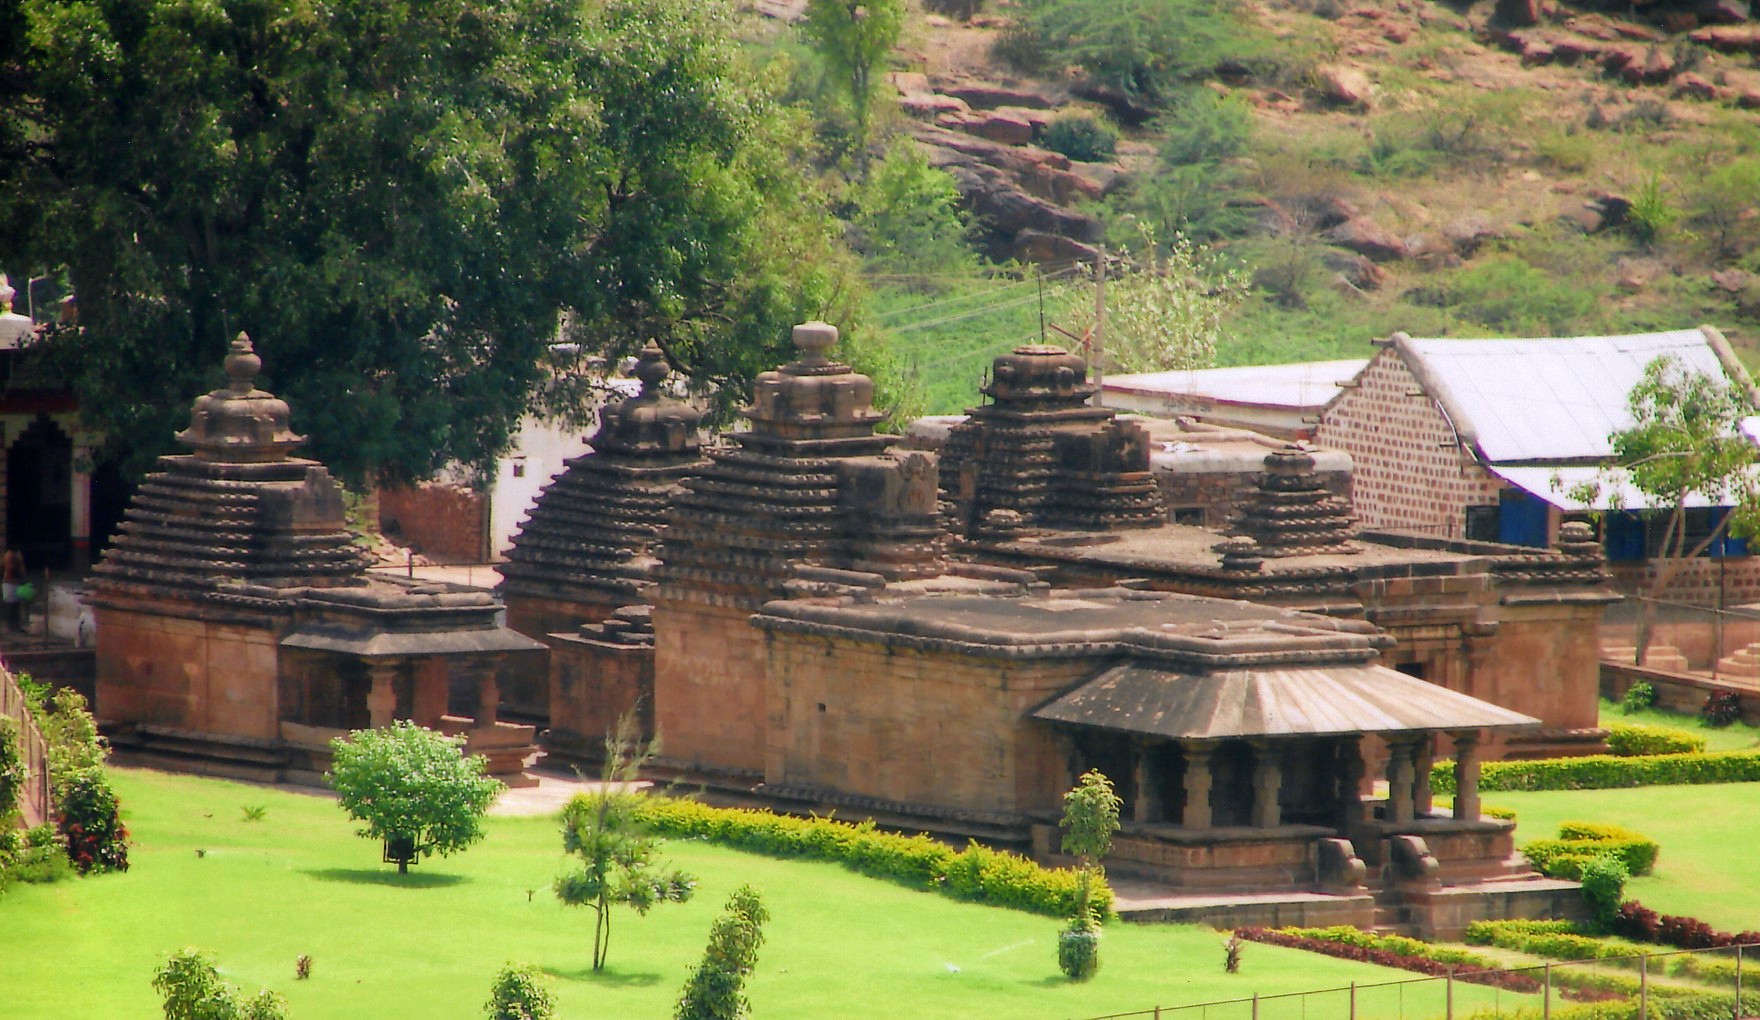 பதாமி மல்லிகார்ஜுனன் கோயில், கர்நாடகா